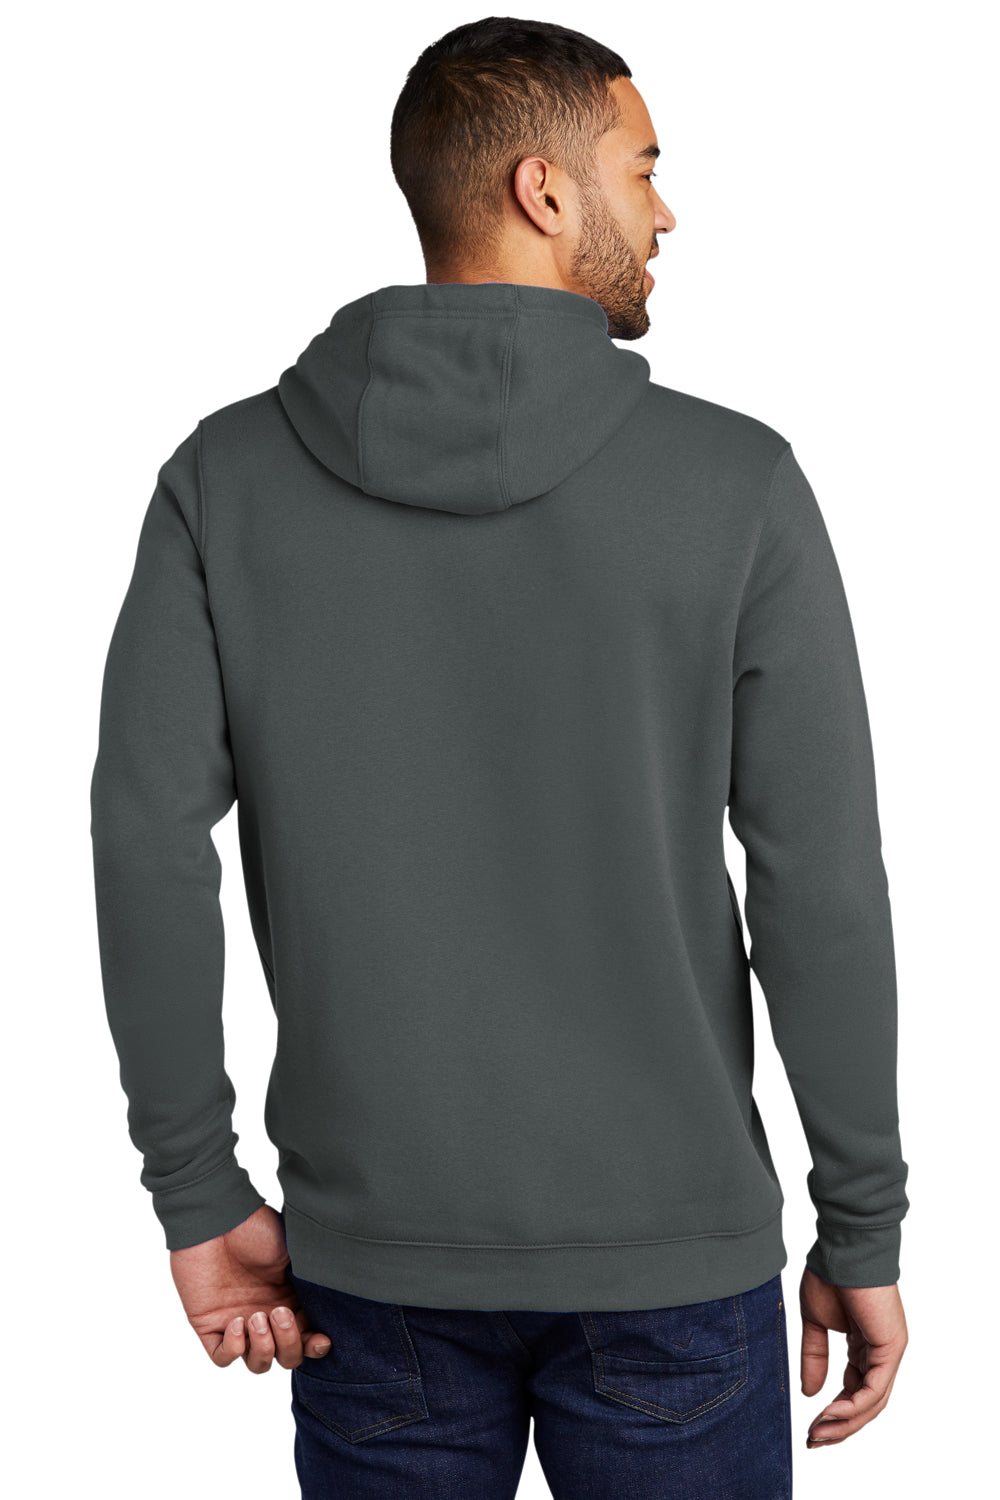 Nike CJ1611 Mens Club Fleece Hooded Sweatshirt Hoodie Anthracite Grey Model Back